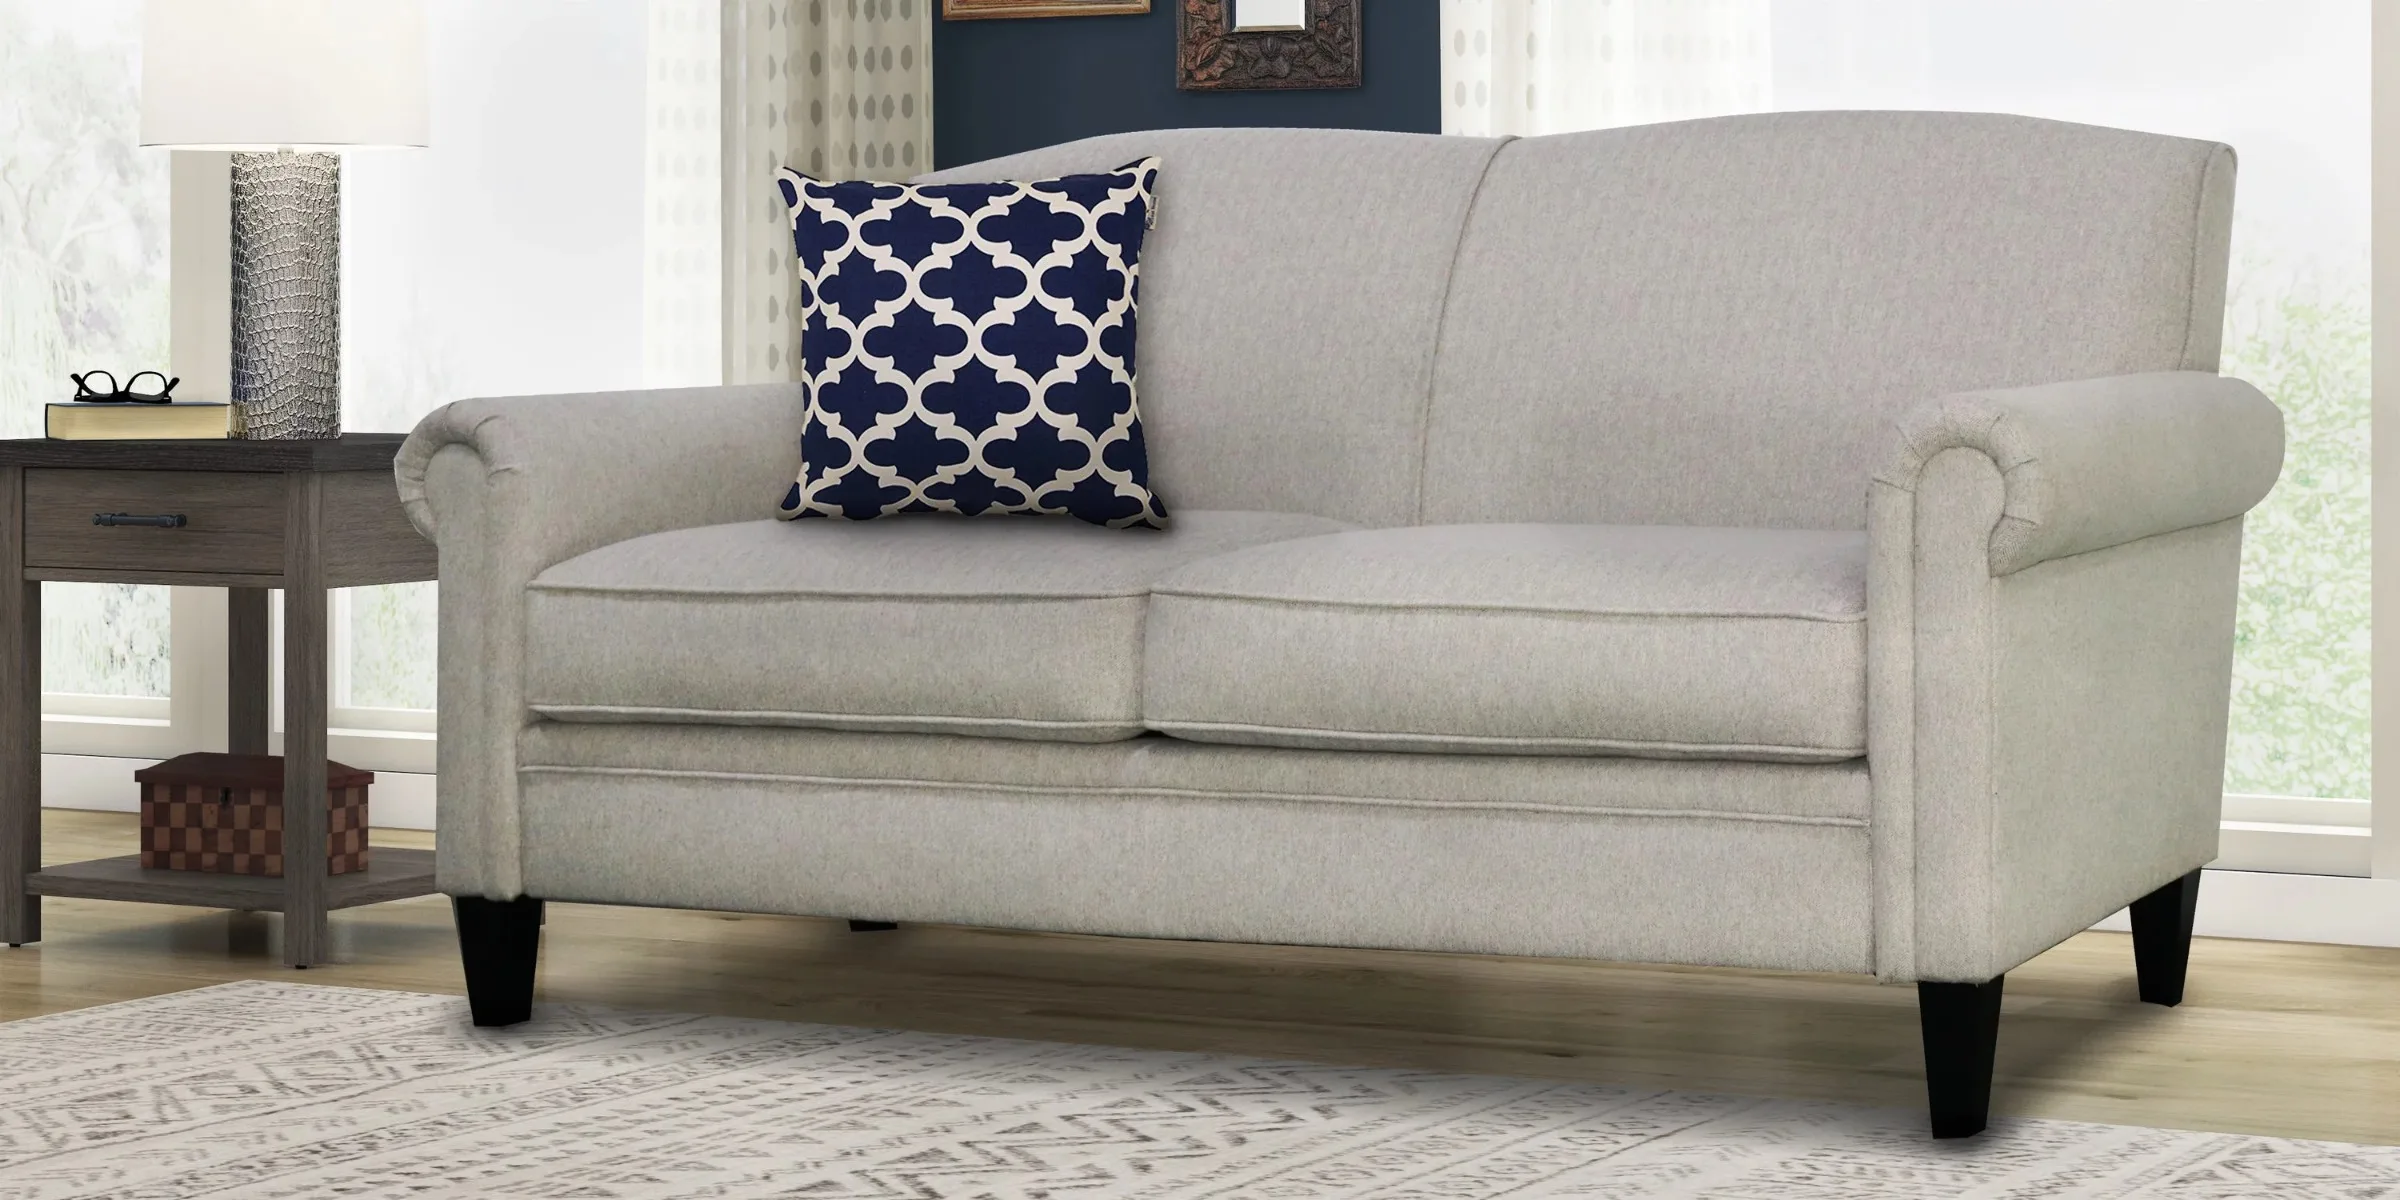 72-дюймовый мягкий диван с подлокотниками серого цвета